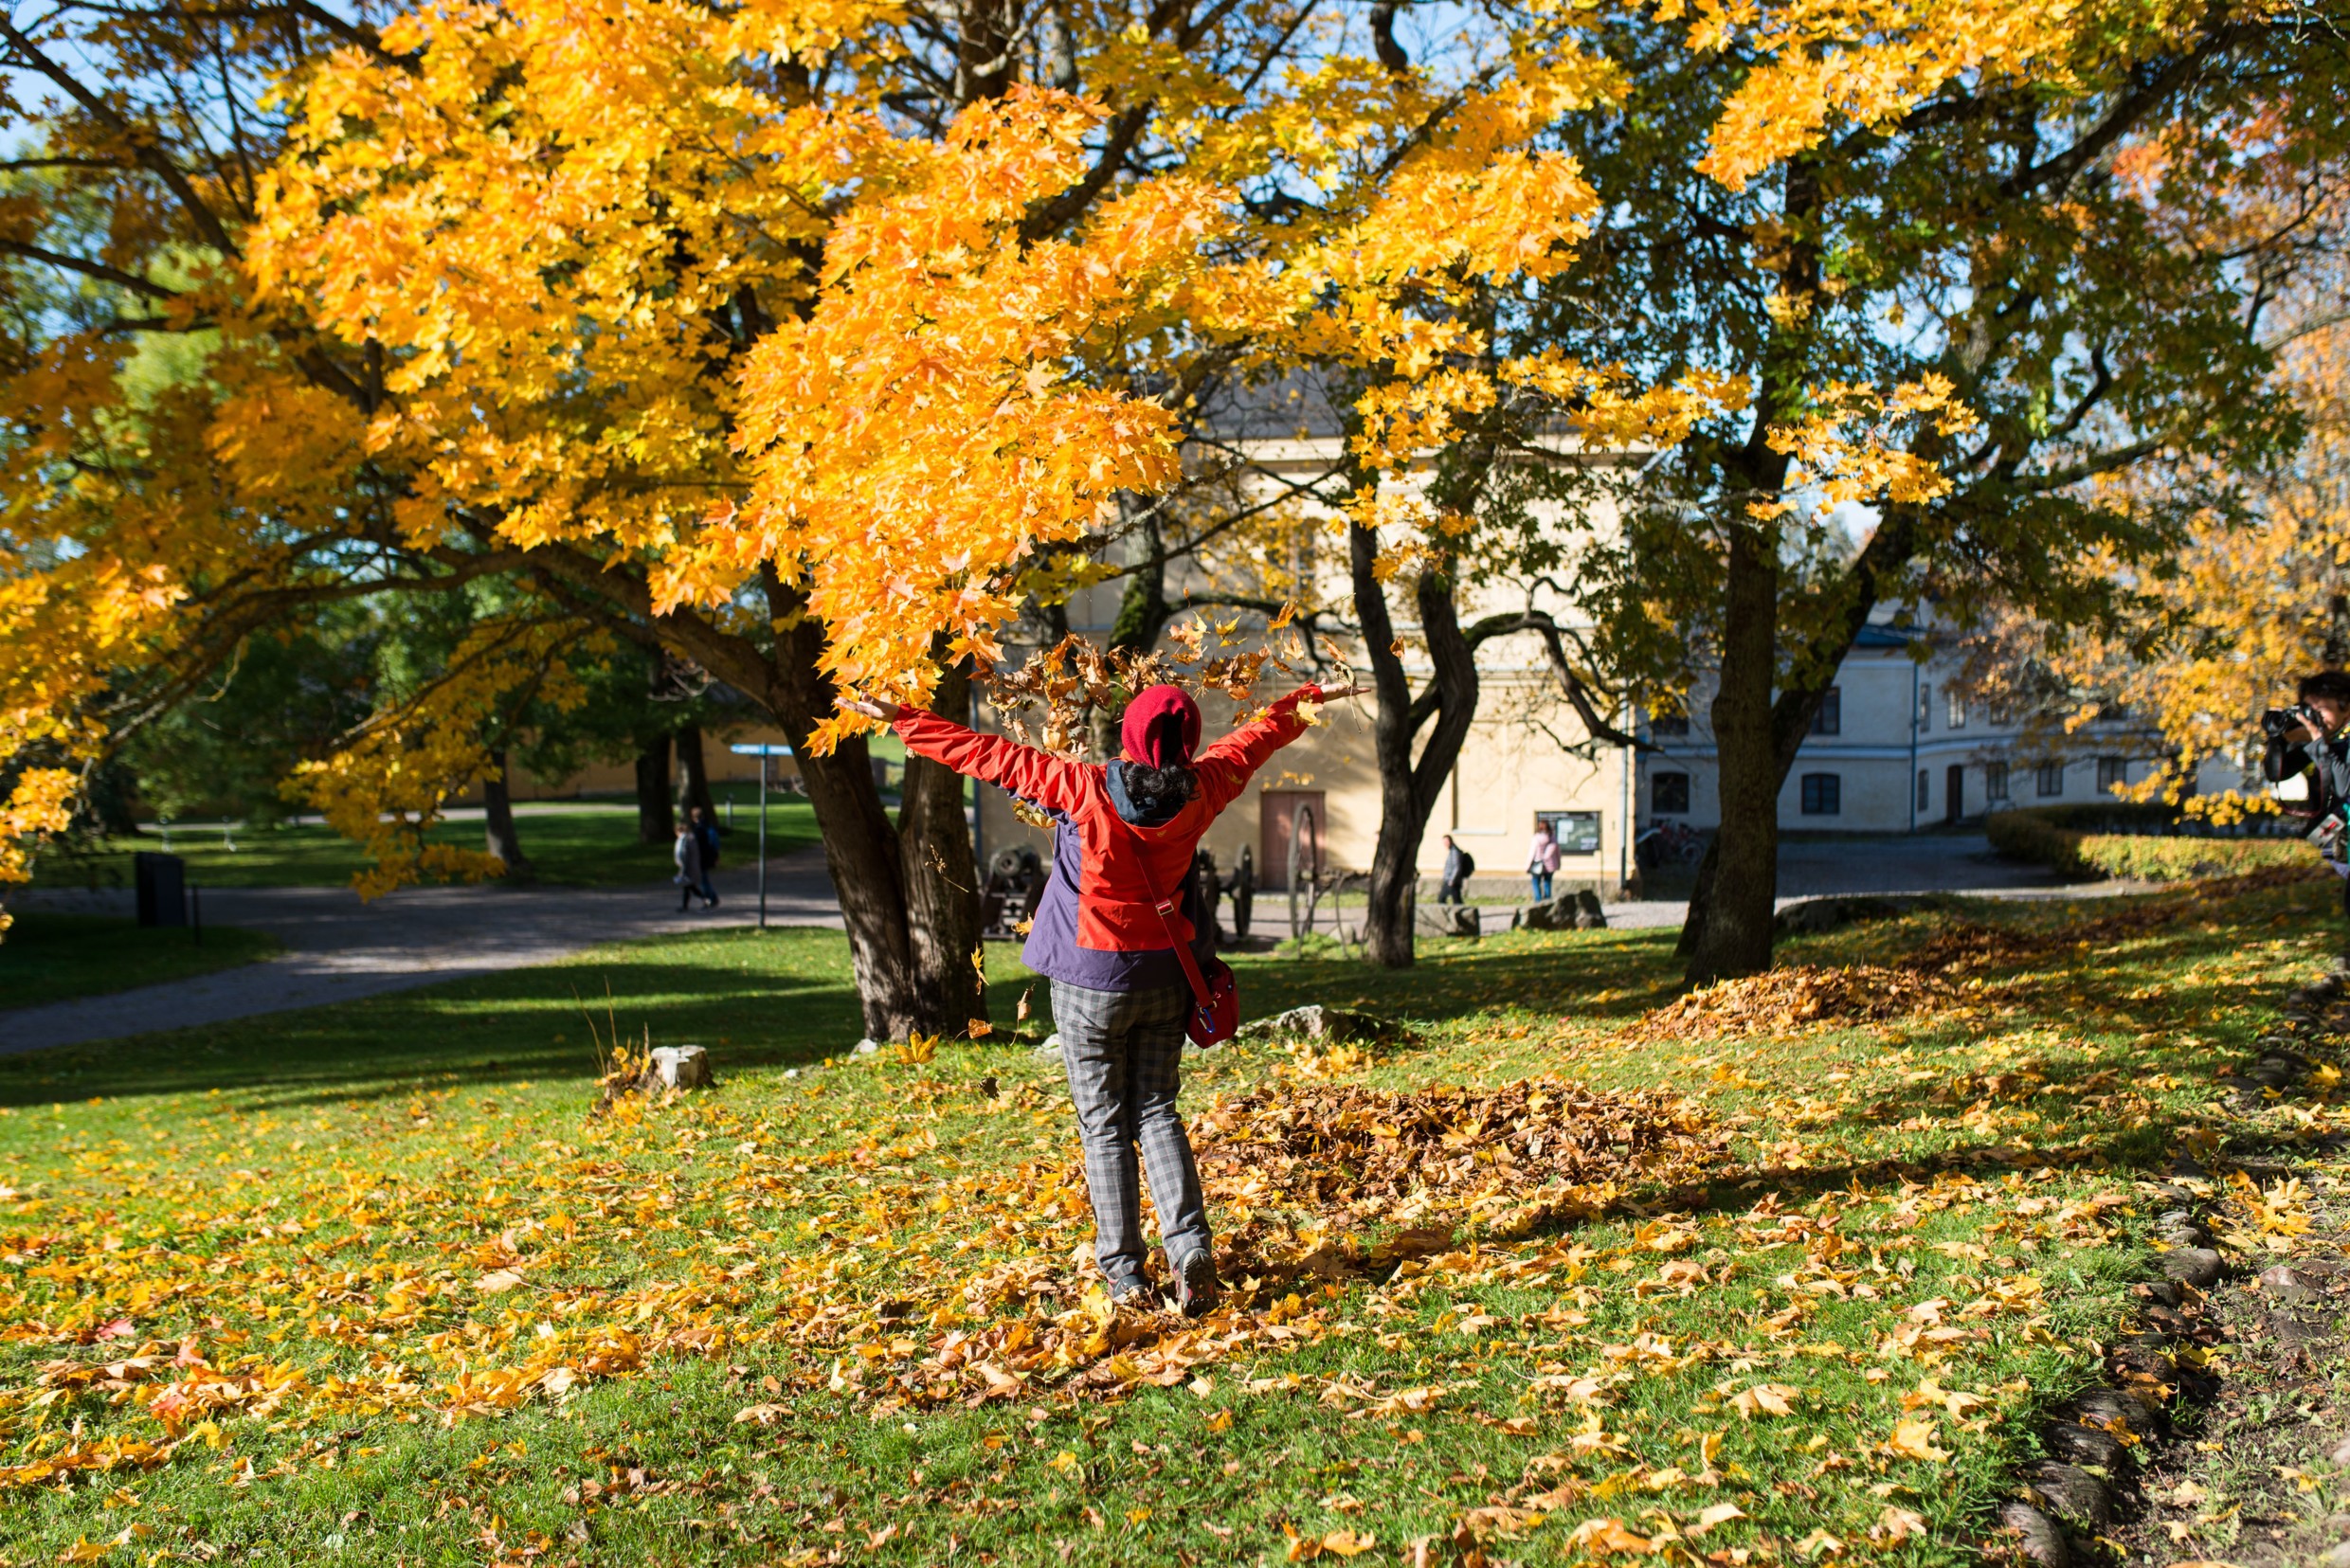 Aikuinen heittää syksyn kellastamia lehtiä ilmaan puistossa.